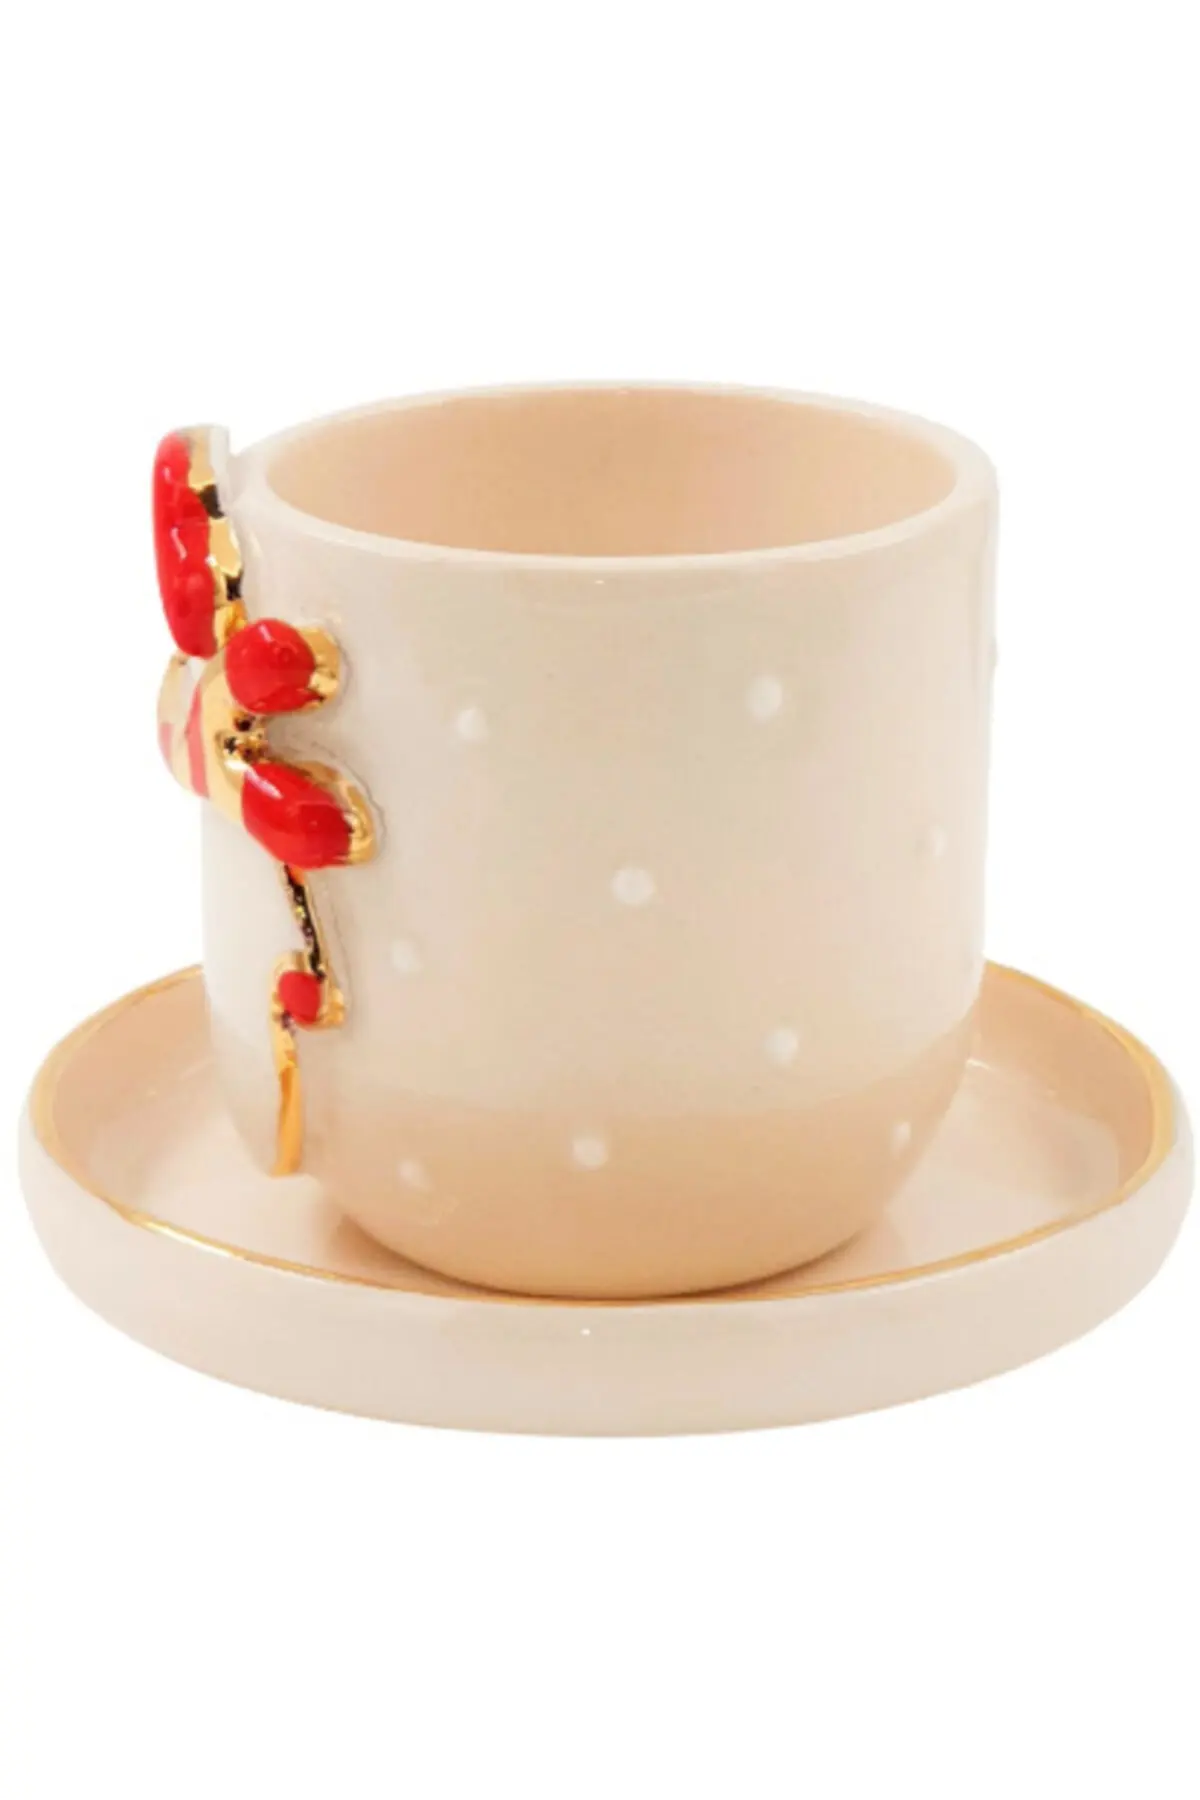 فنجان قهوه خوری طلاکاری شده طرح آدم برفی کریسمس همراه نعلبکی شیری طلایی 